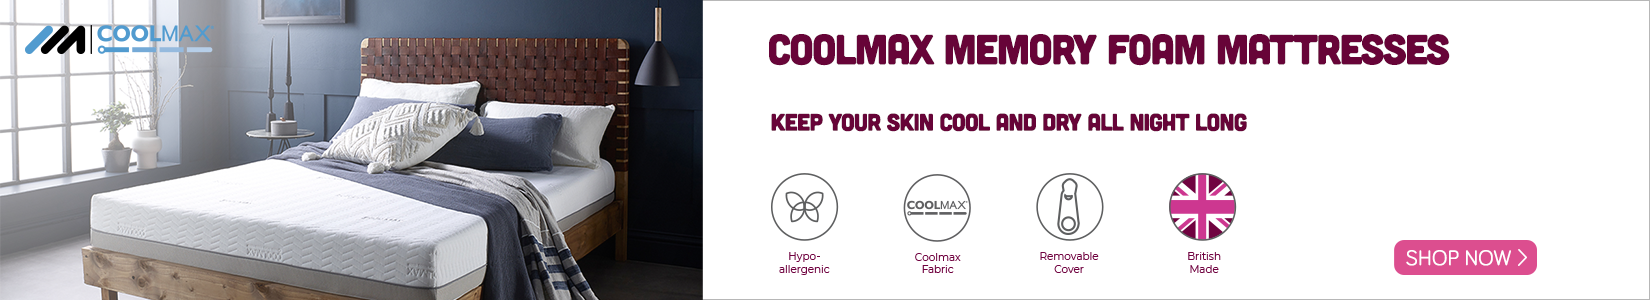 Coolmax cooling mattress banner